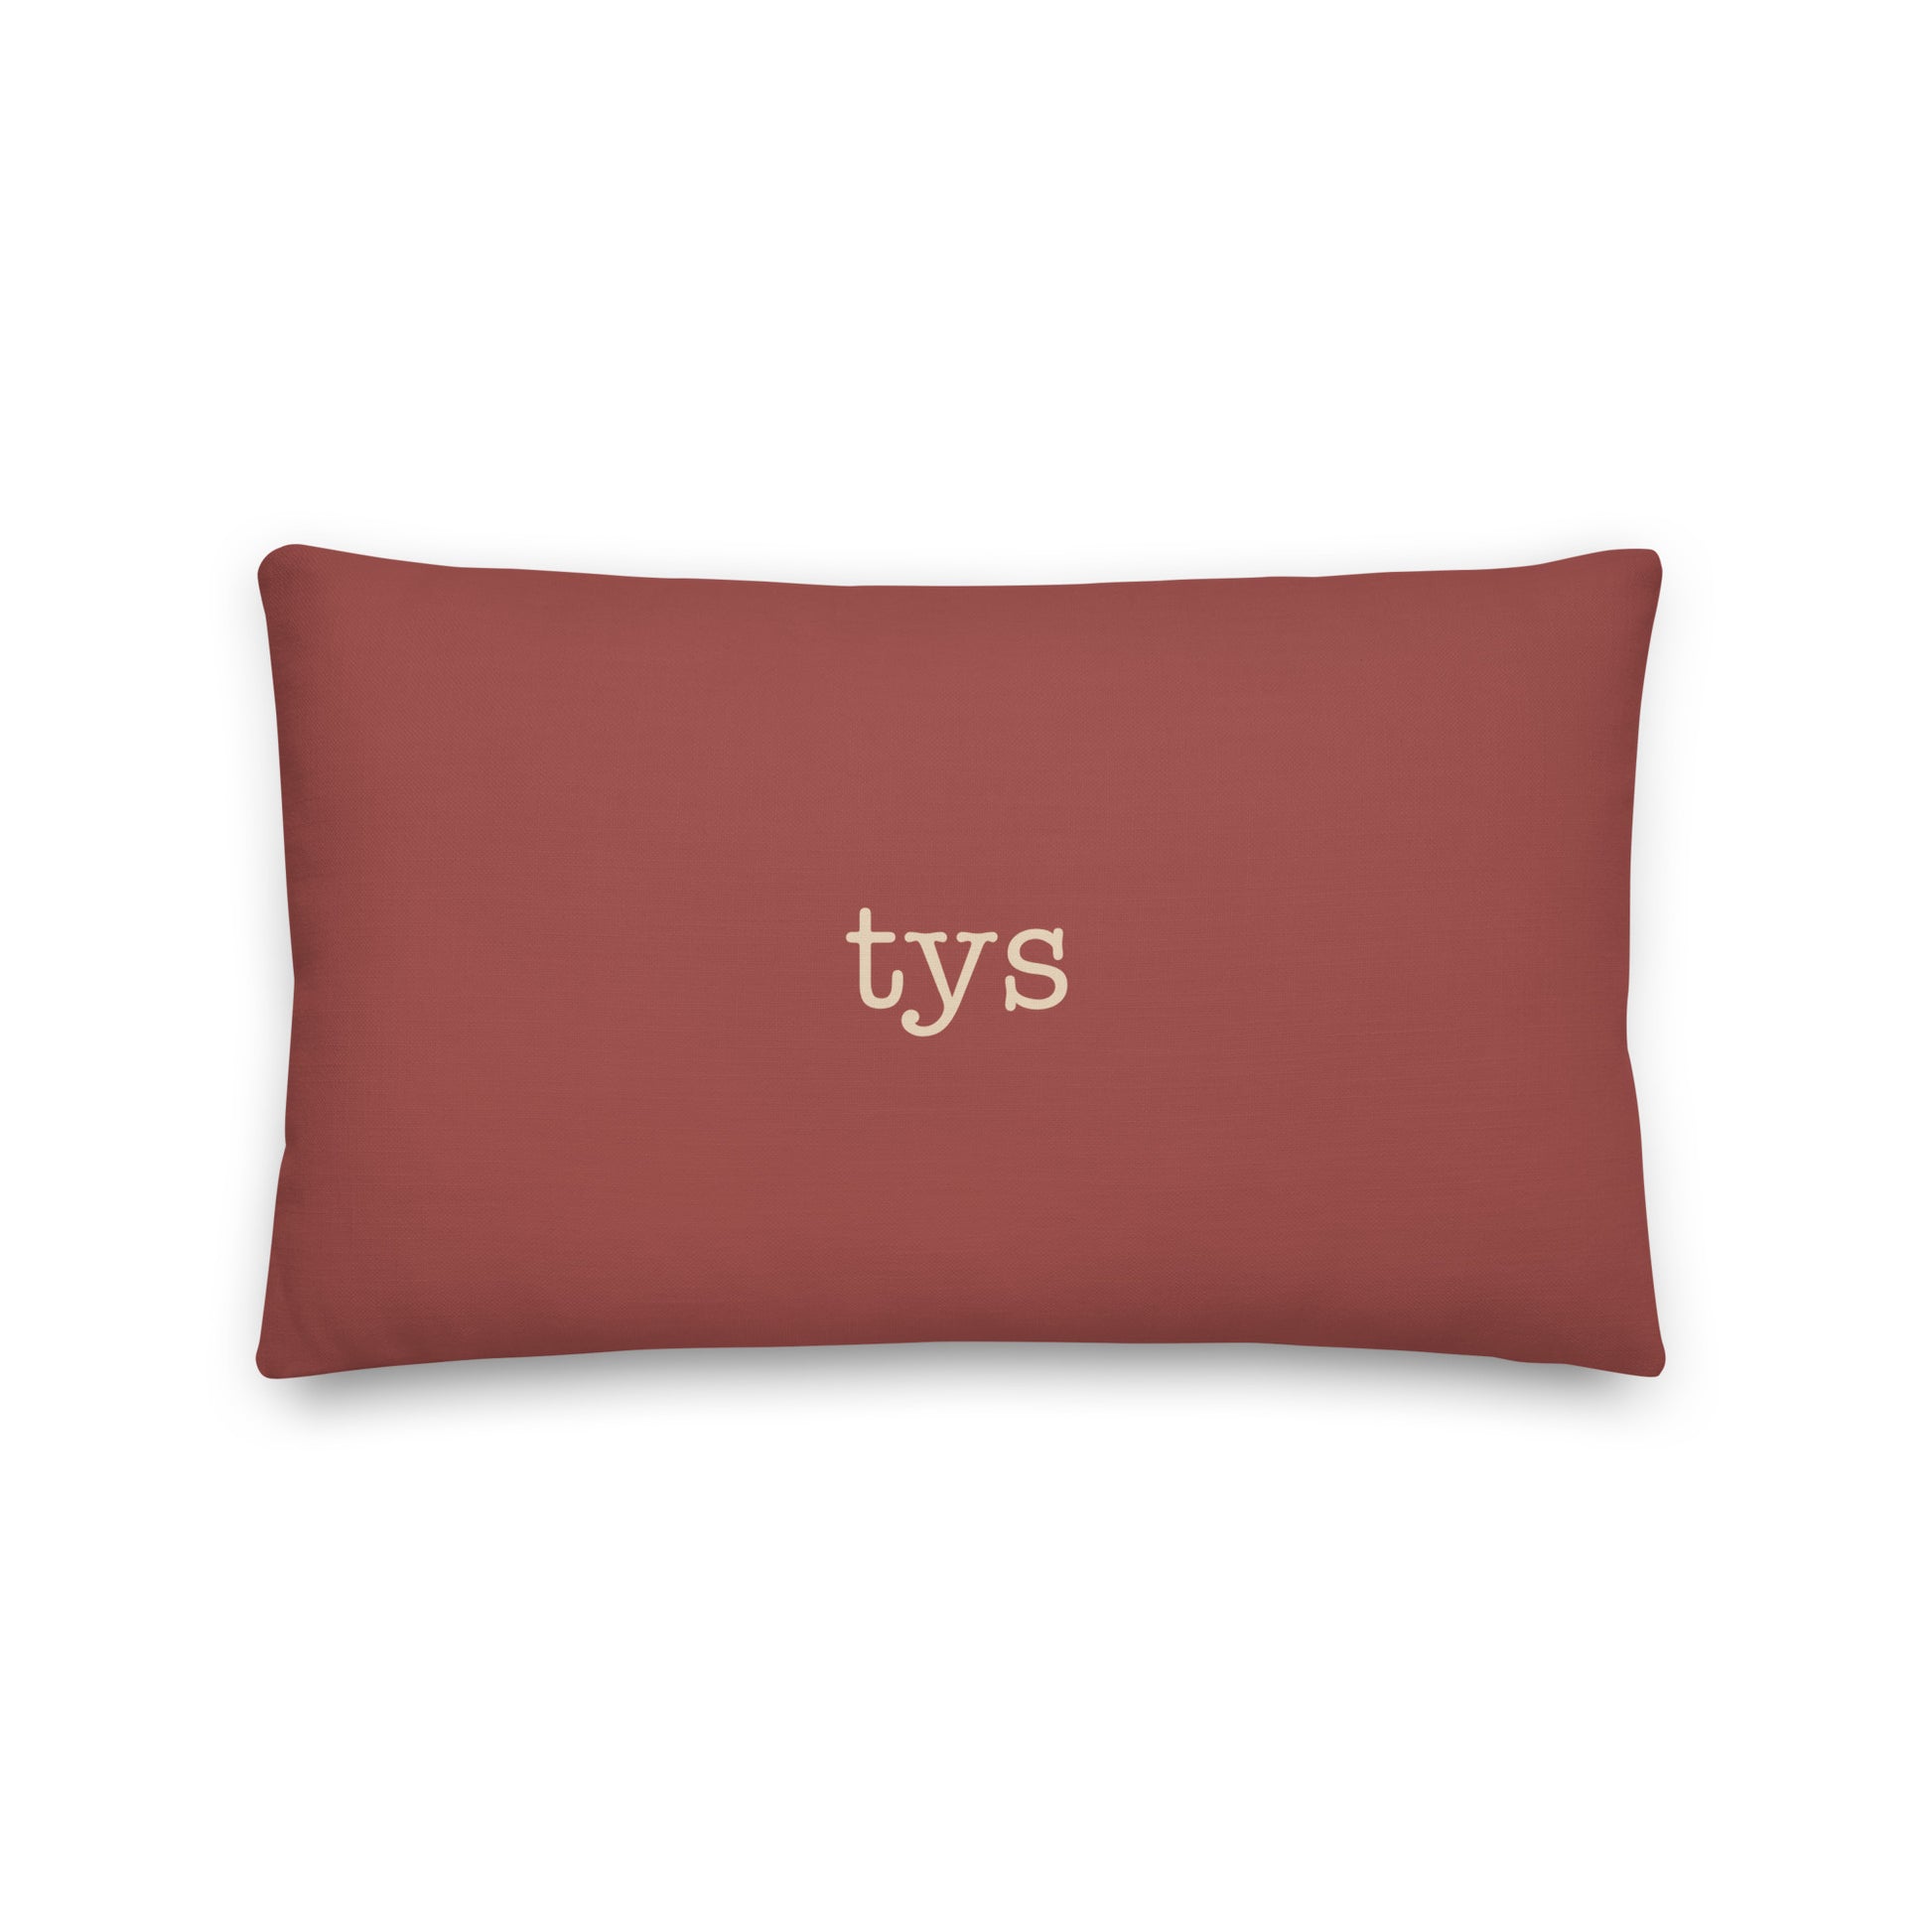 Typewriter Pillow - Terra Cotta • TYS Knoxville • YHM Designs - Image 02